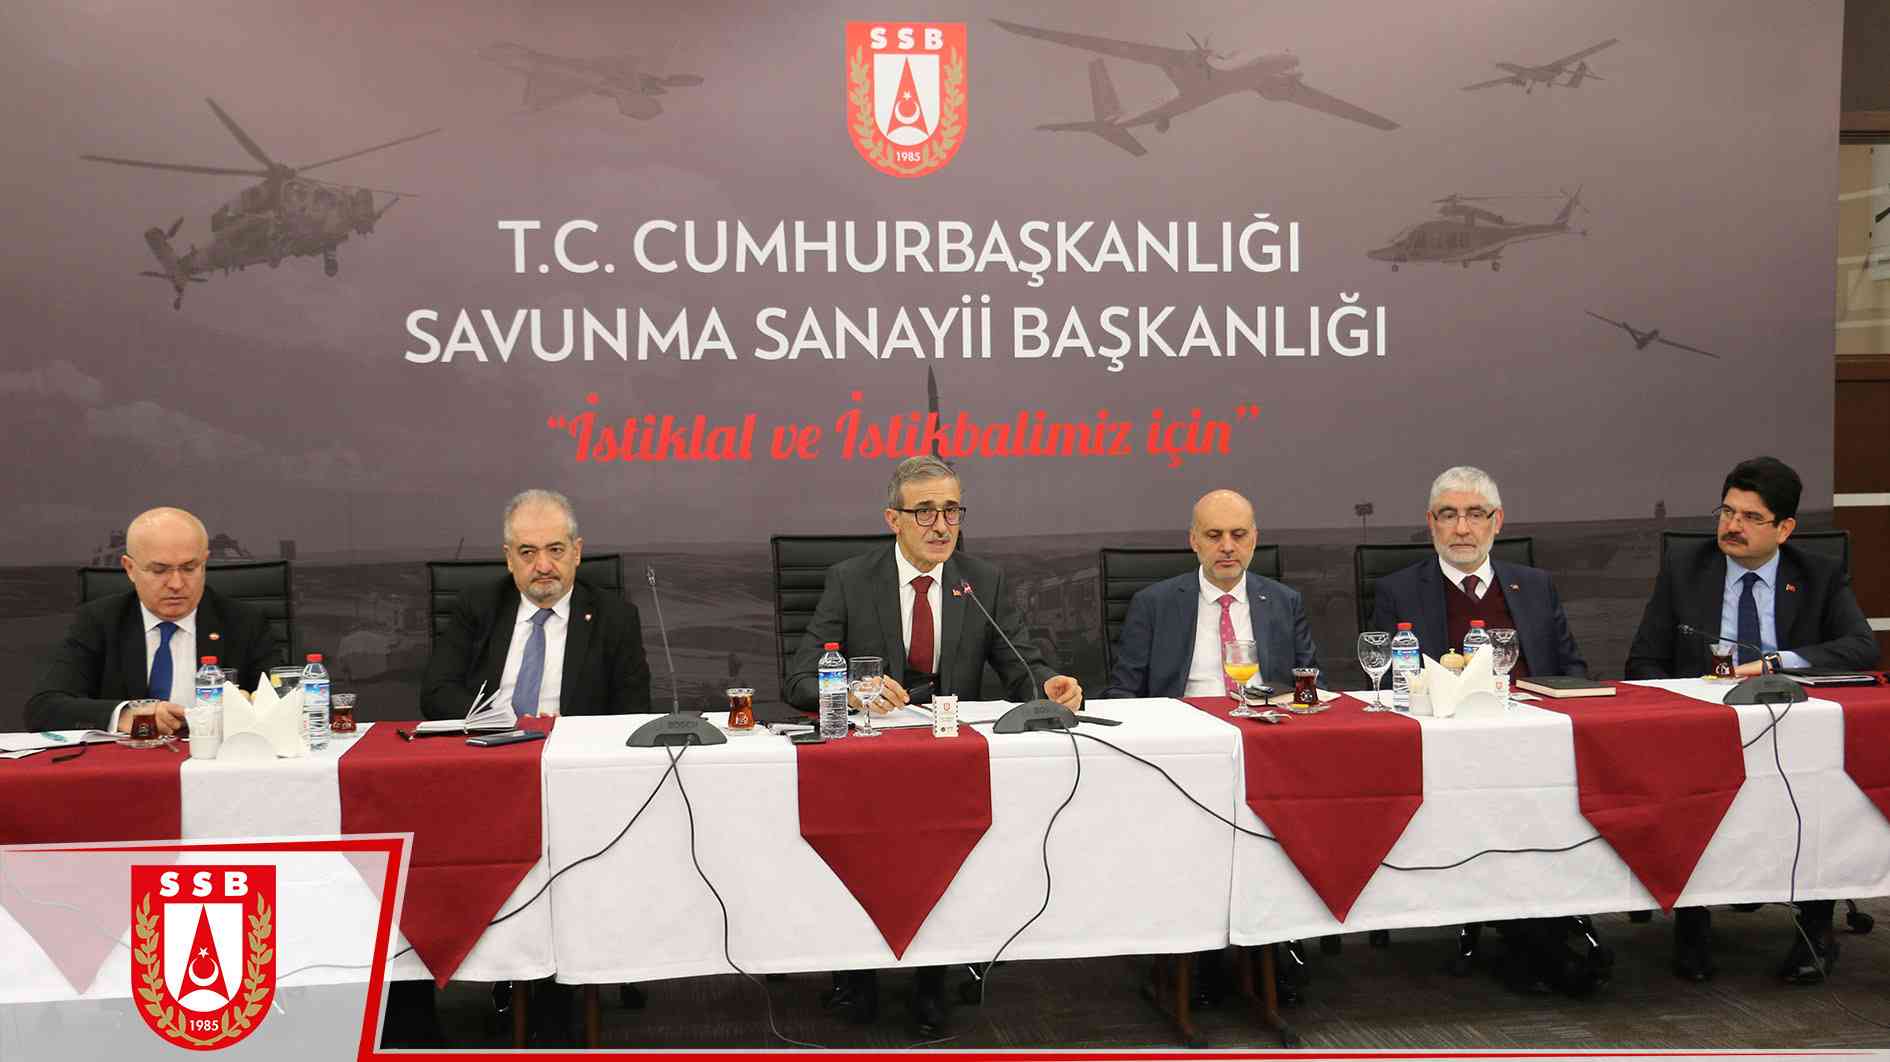  Savunma Sanayii Başkanı İsmail Demir'den önemli açıklamalar